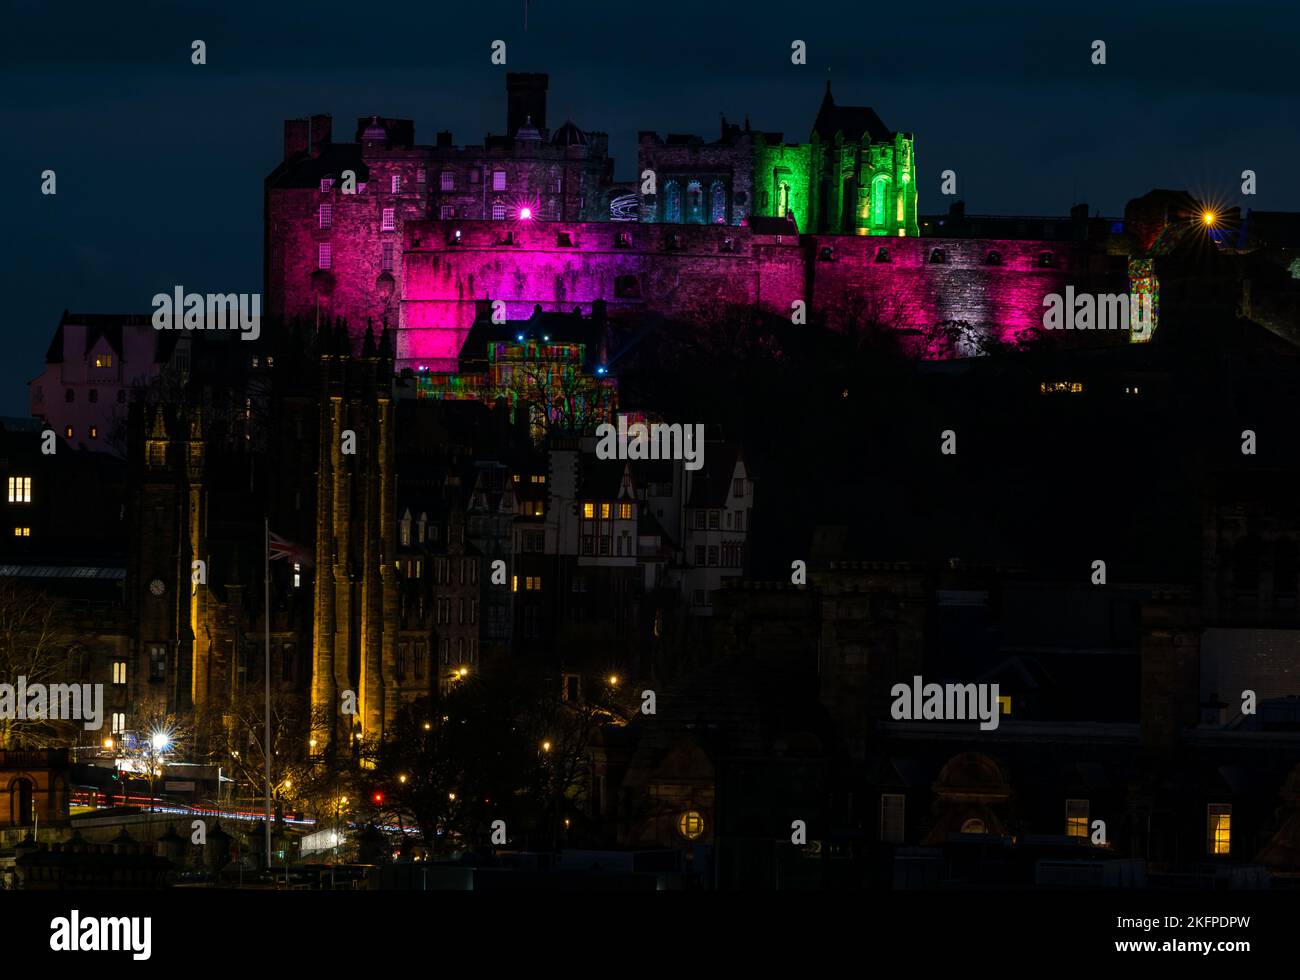 Le château d'Édimbourg s'illumine la nuit pour l'événement du château de lumière, centre-ville d'Édimbourg, Écosse, Royaume-Uni Banque D'Images